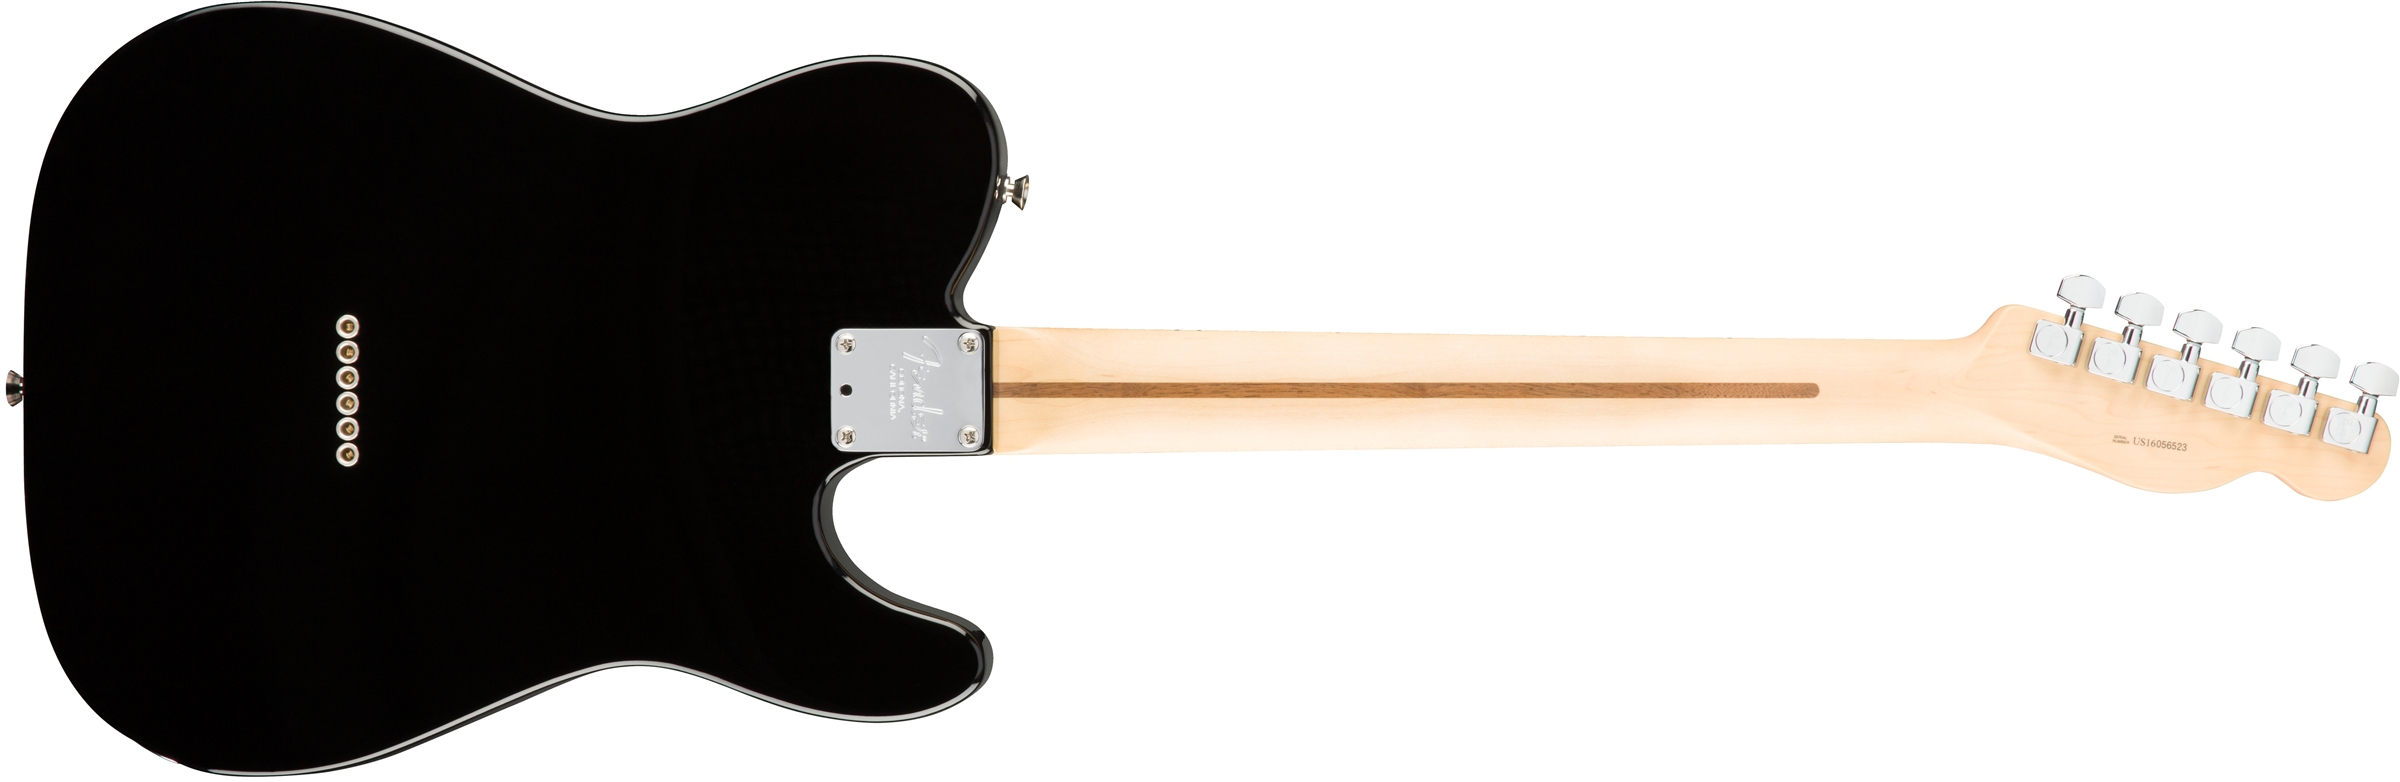 Fender Tele American Professional Lh Usa Gaucher 2s Mn - Black - Linkshandige elektrische gitaar - Variation 1